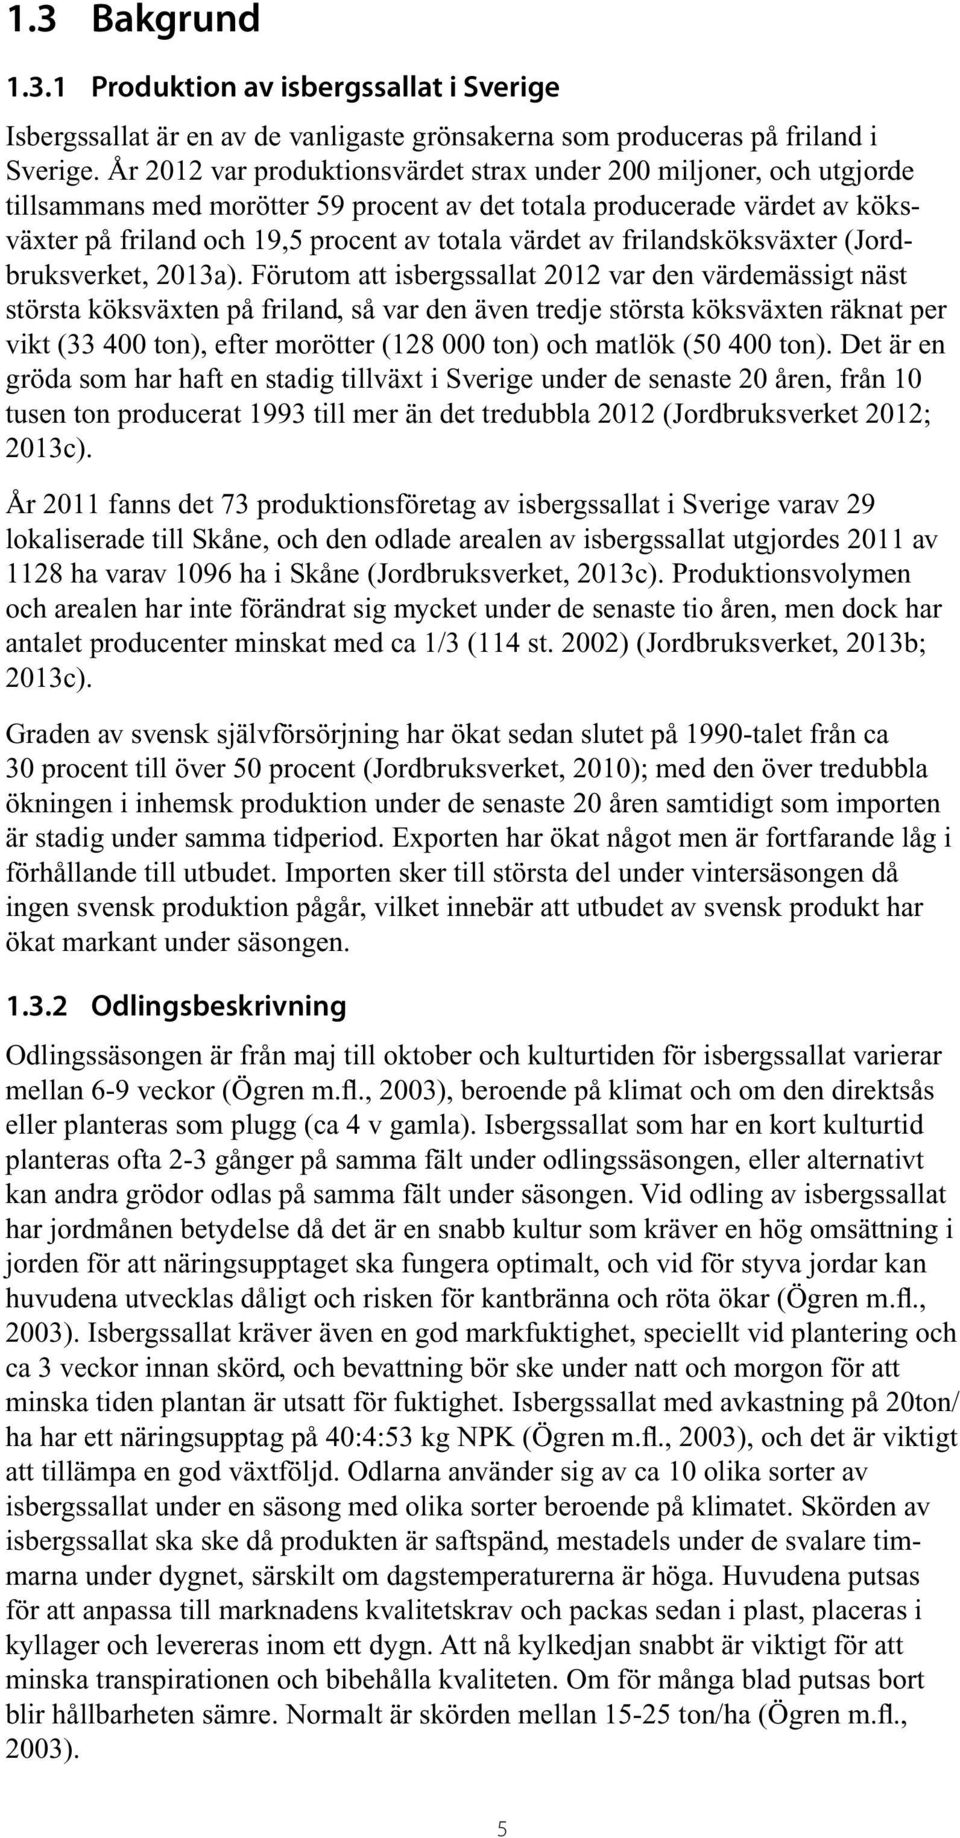 frilandsköksväxter (Jordbruksverket, 2013a).